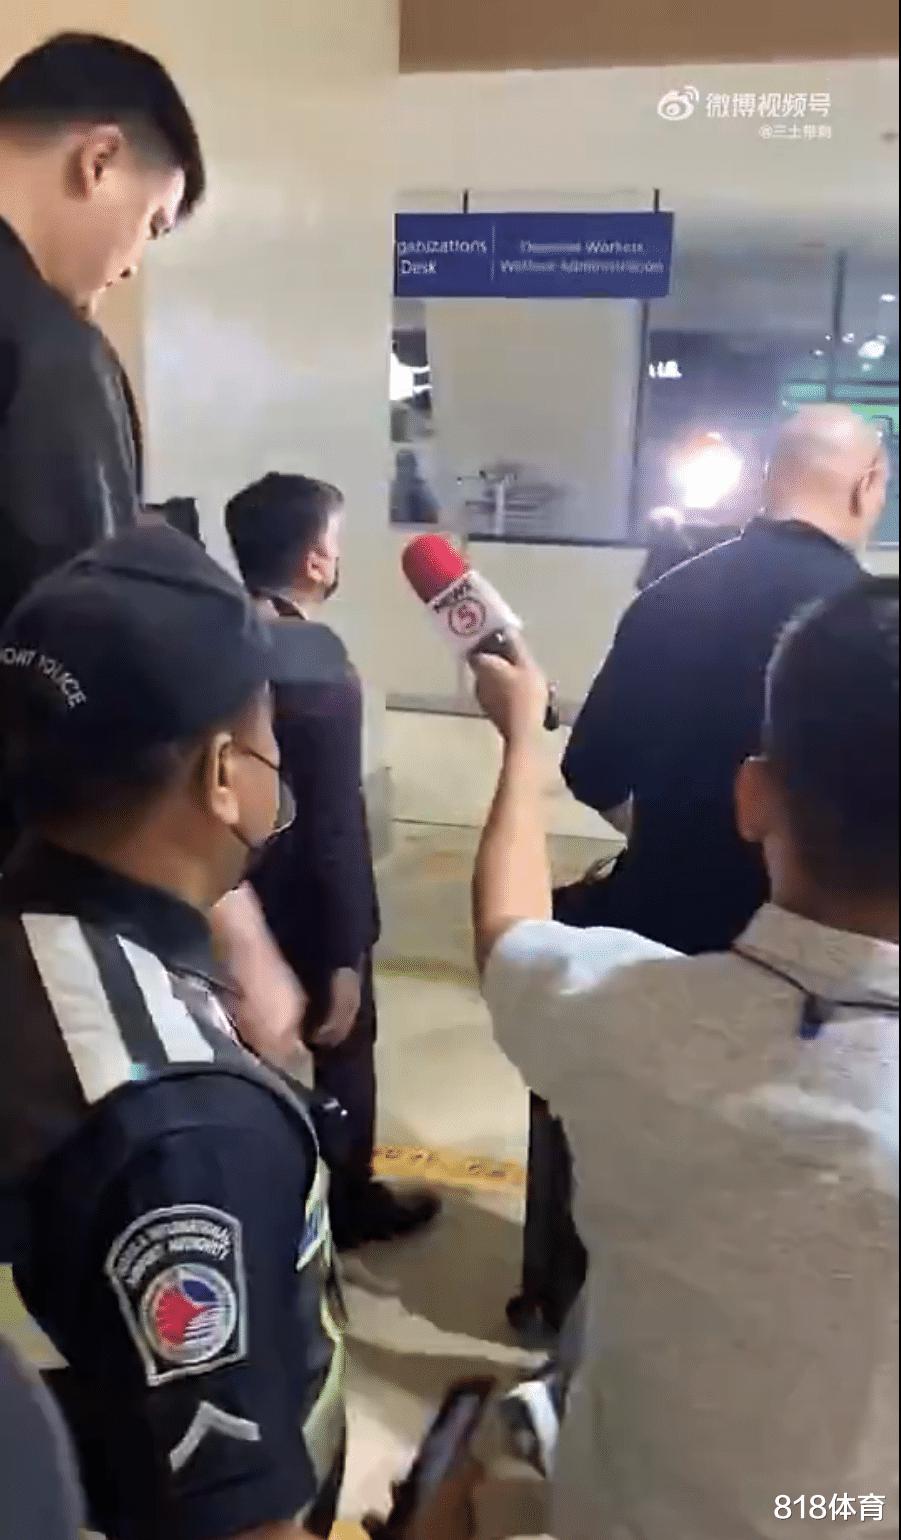 排面! 姚明抵达马尼拉出席世界杯抽签, 10名警察护驾扫地大妈掏手机拍照(7)